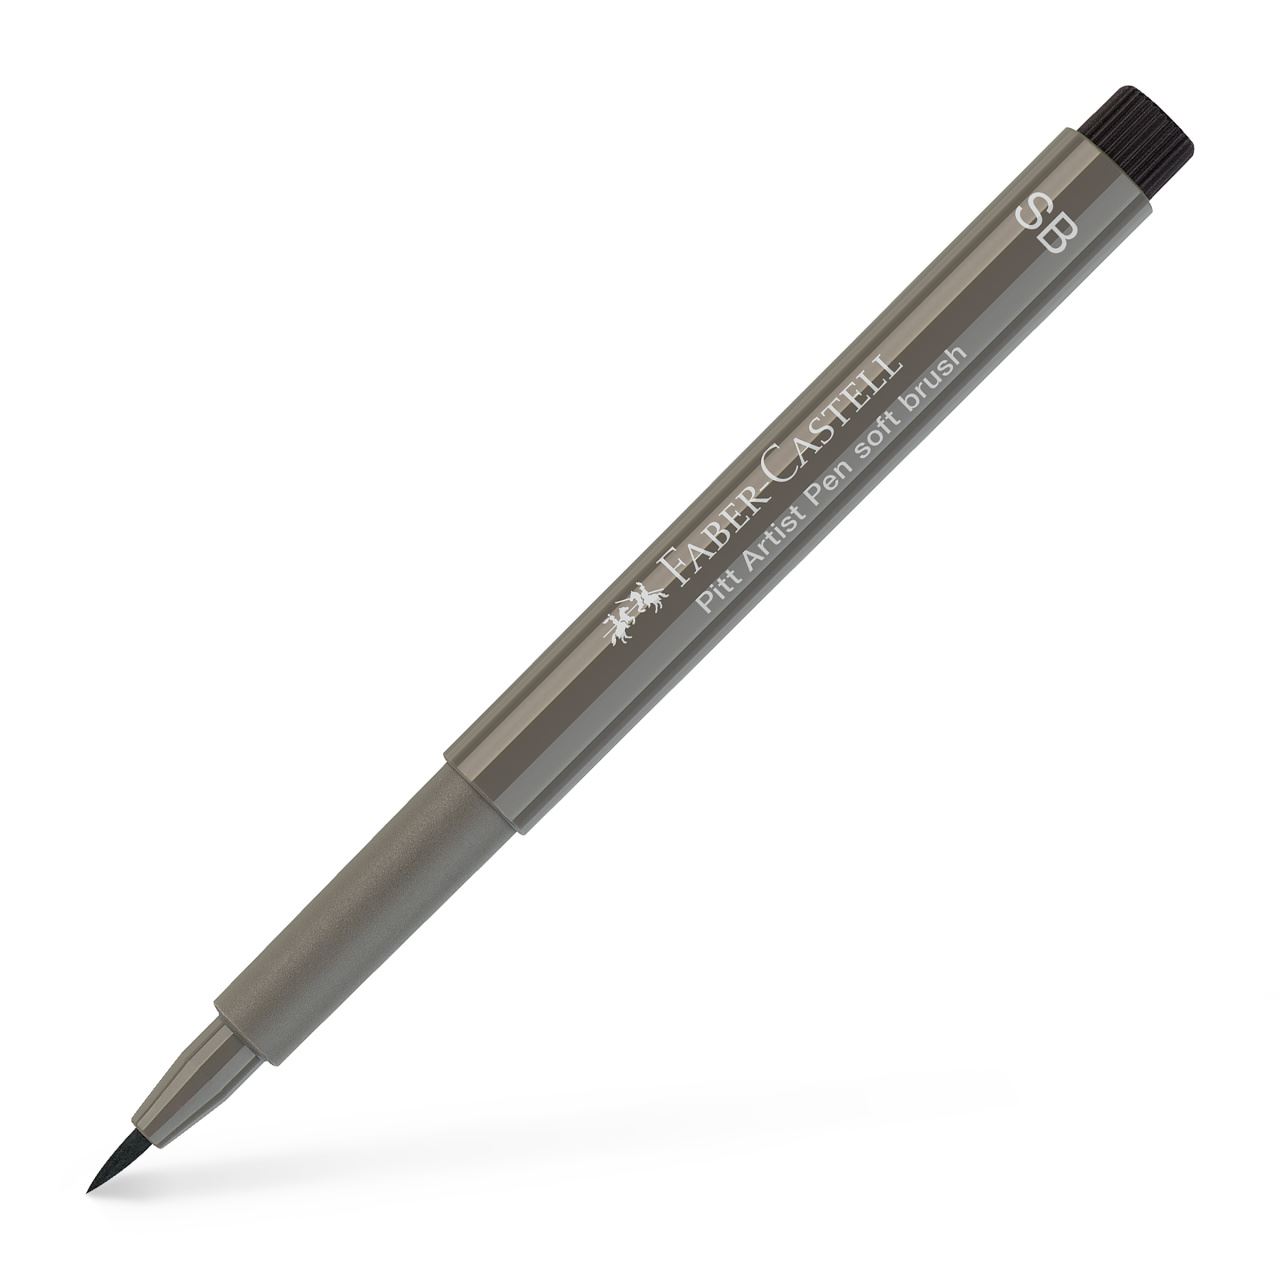 Faber-Castell - Rotulador Pitt Artist Pen Soft Brush, gris cálido IV